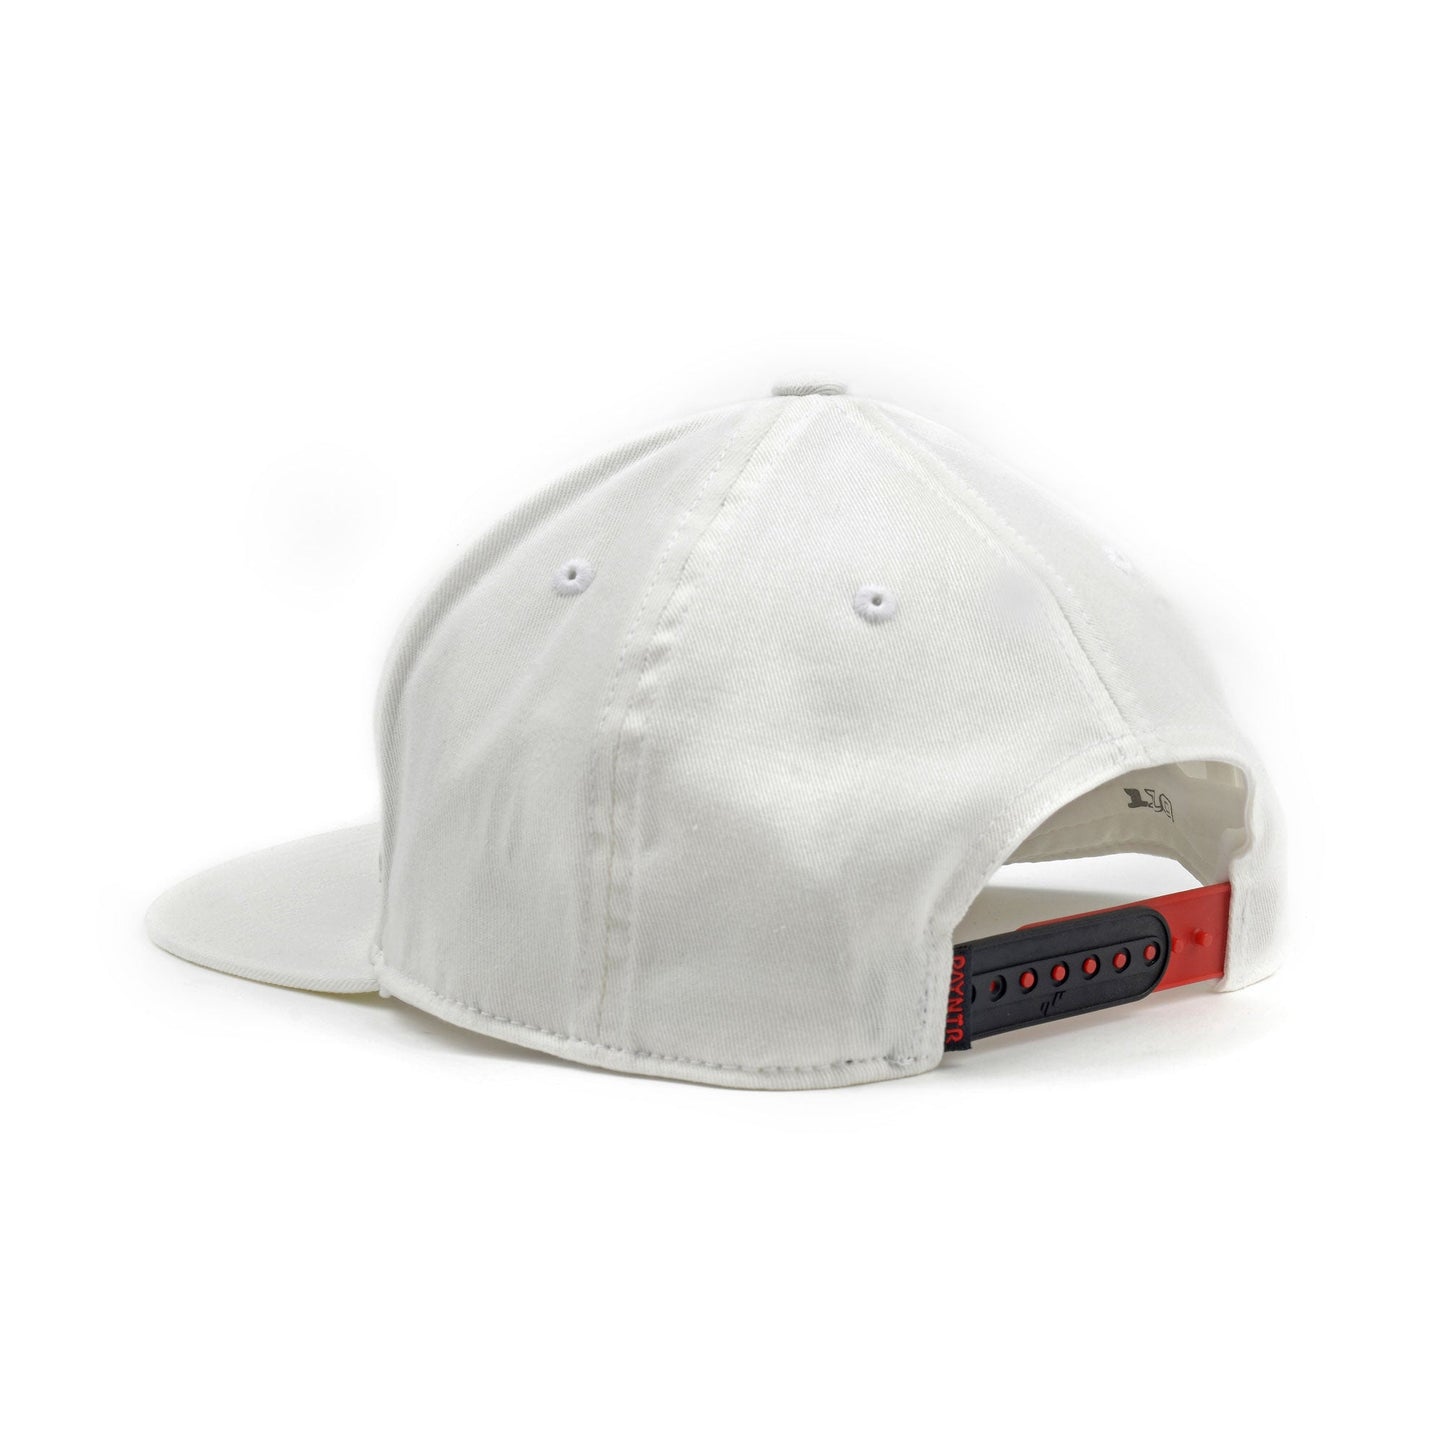 PAYNTR Brand X Cap (White) - Back